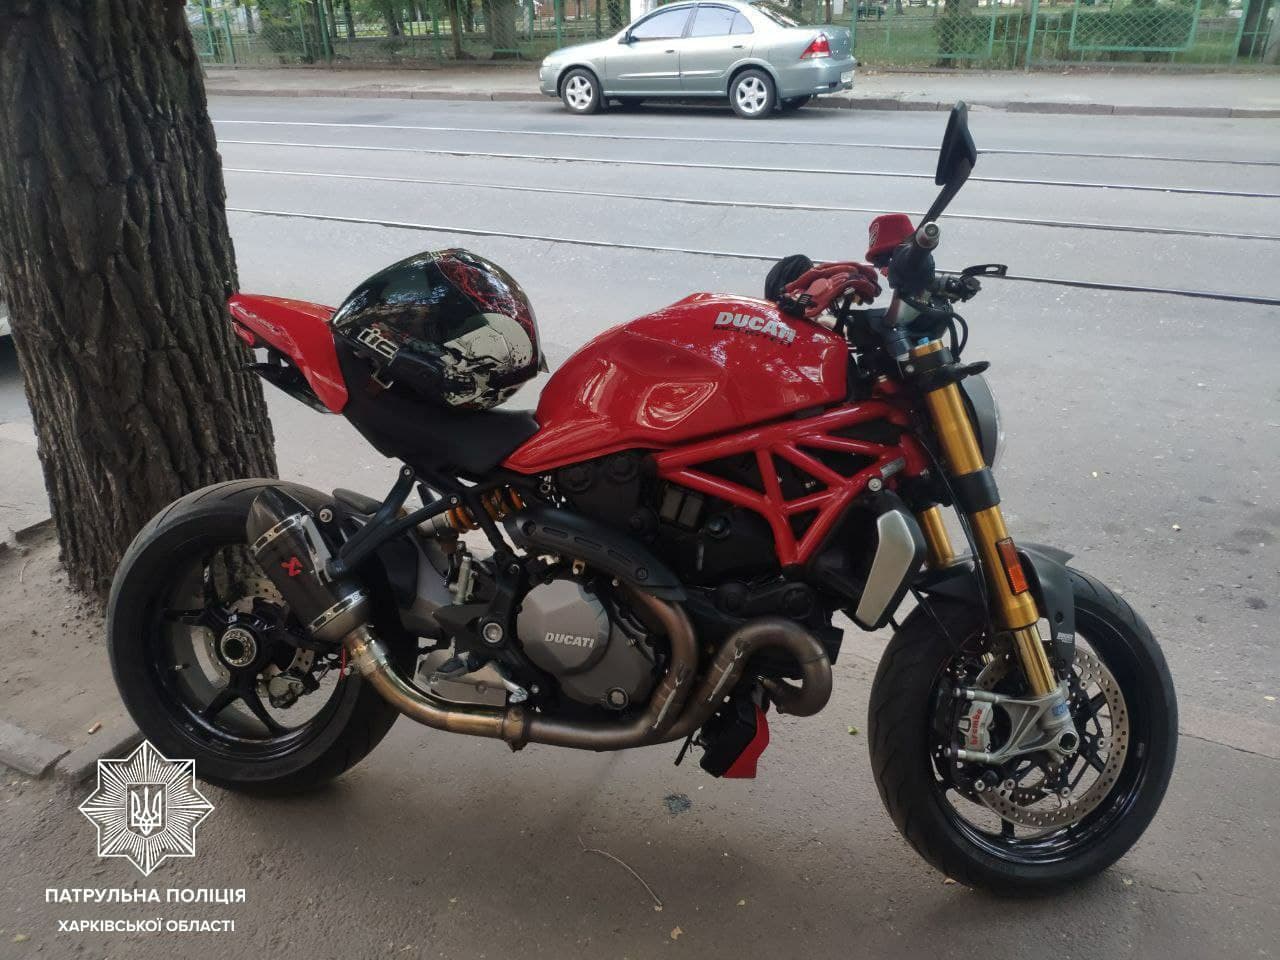 В Харькове нашли два мотоцикла, угнанных в Италии